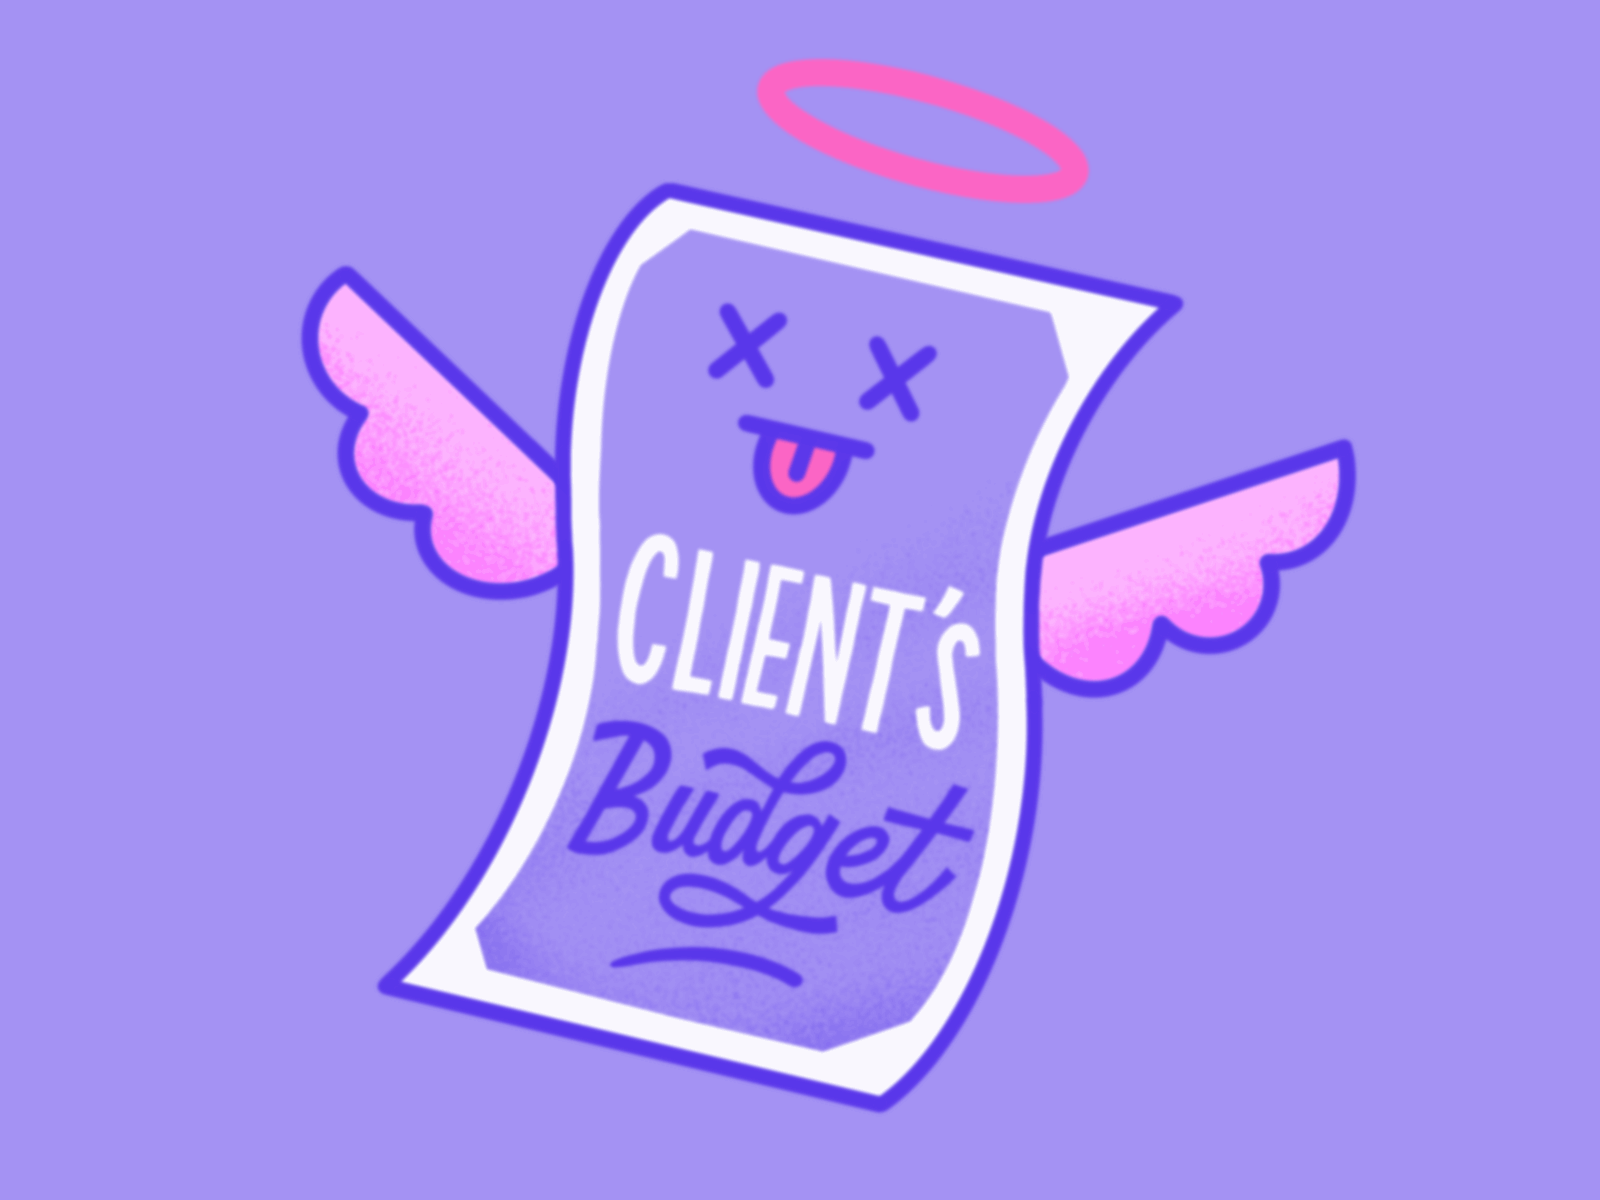 Client's Budget character design cute illustration gif gif animated gif animation giphy giphy sticker giphy stickers illustration kawaii kawaii art money